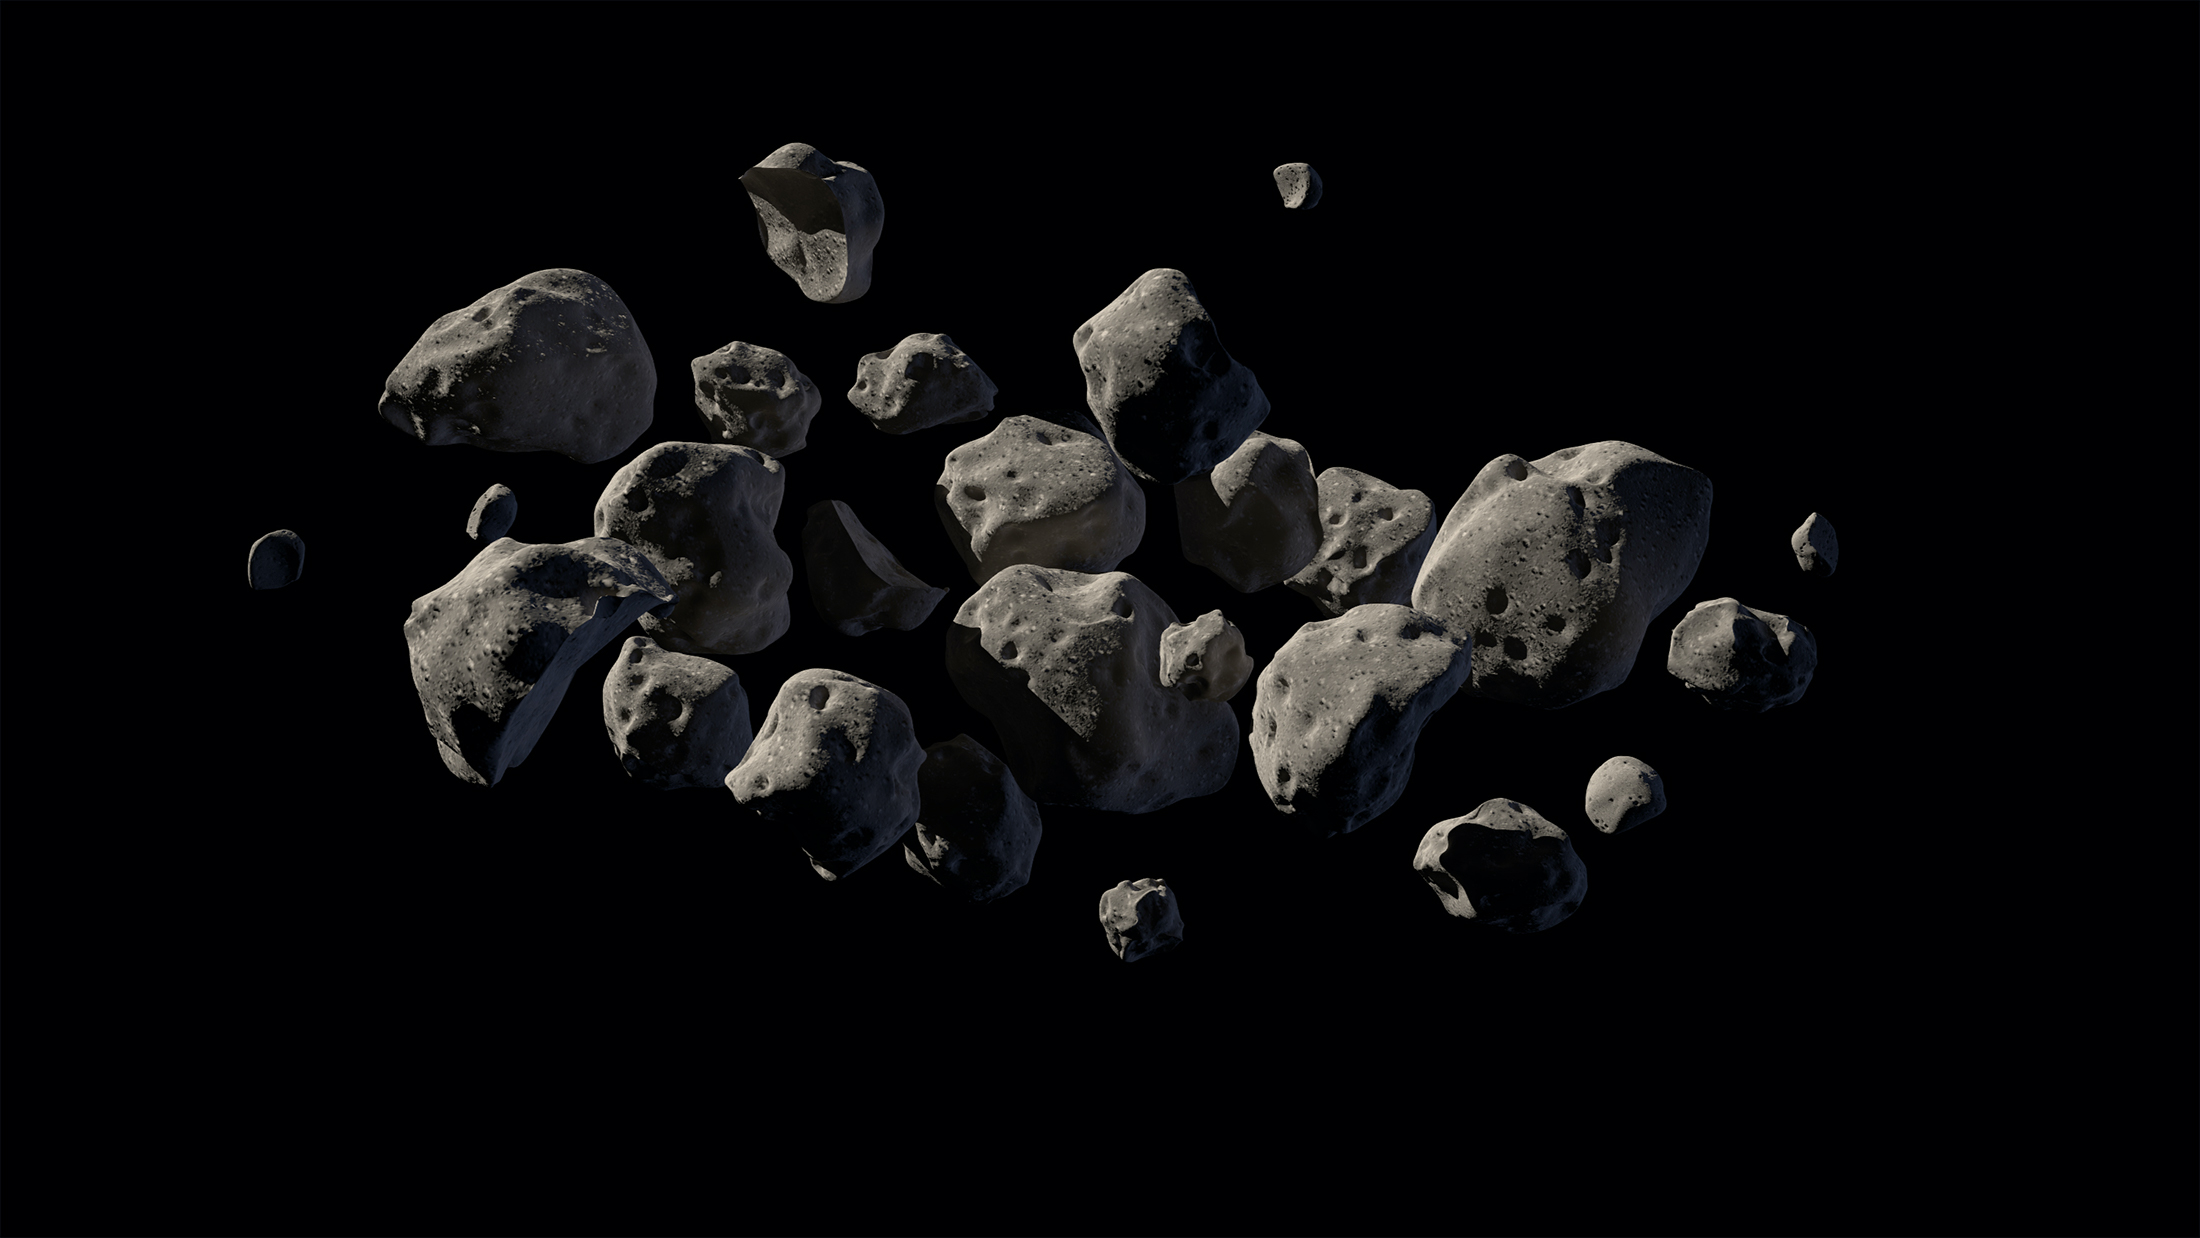 Représentation artistique d'astéroïdes. © Nasa, JPL